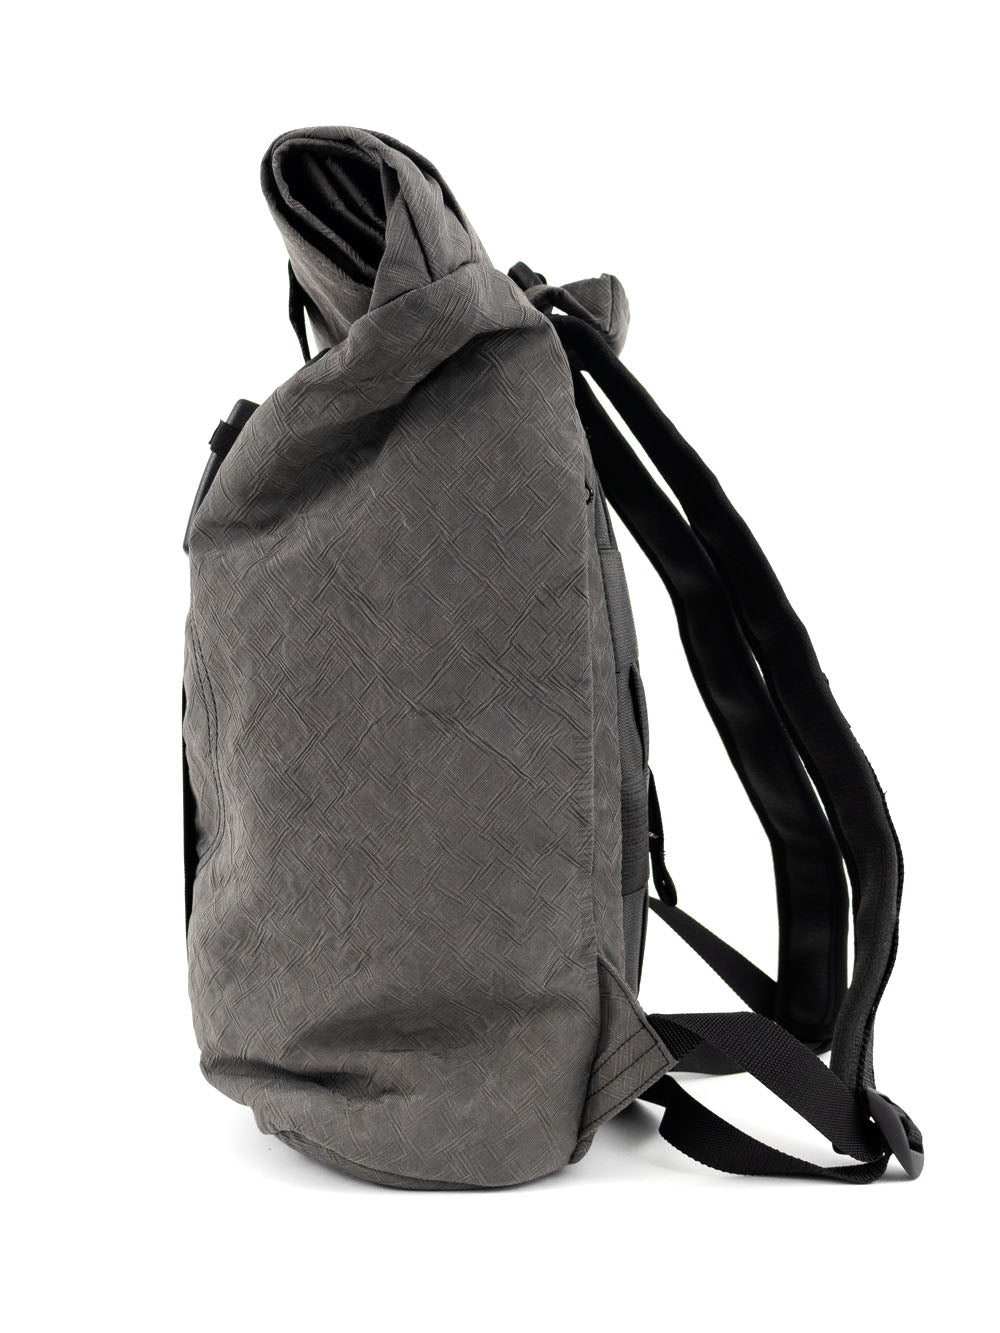 Airpaq sac à dos roll top - couleur anthracite 